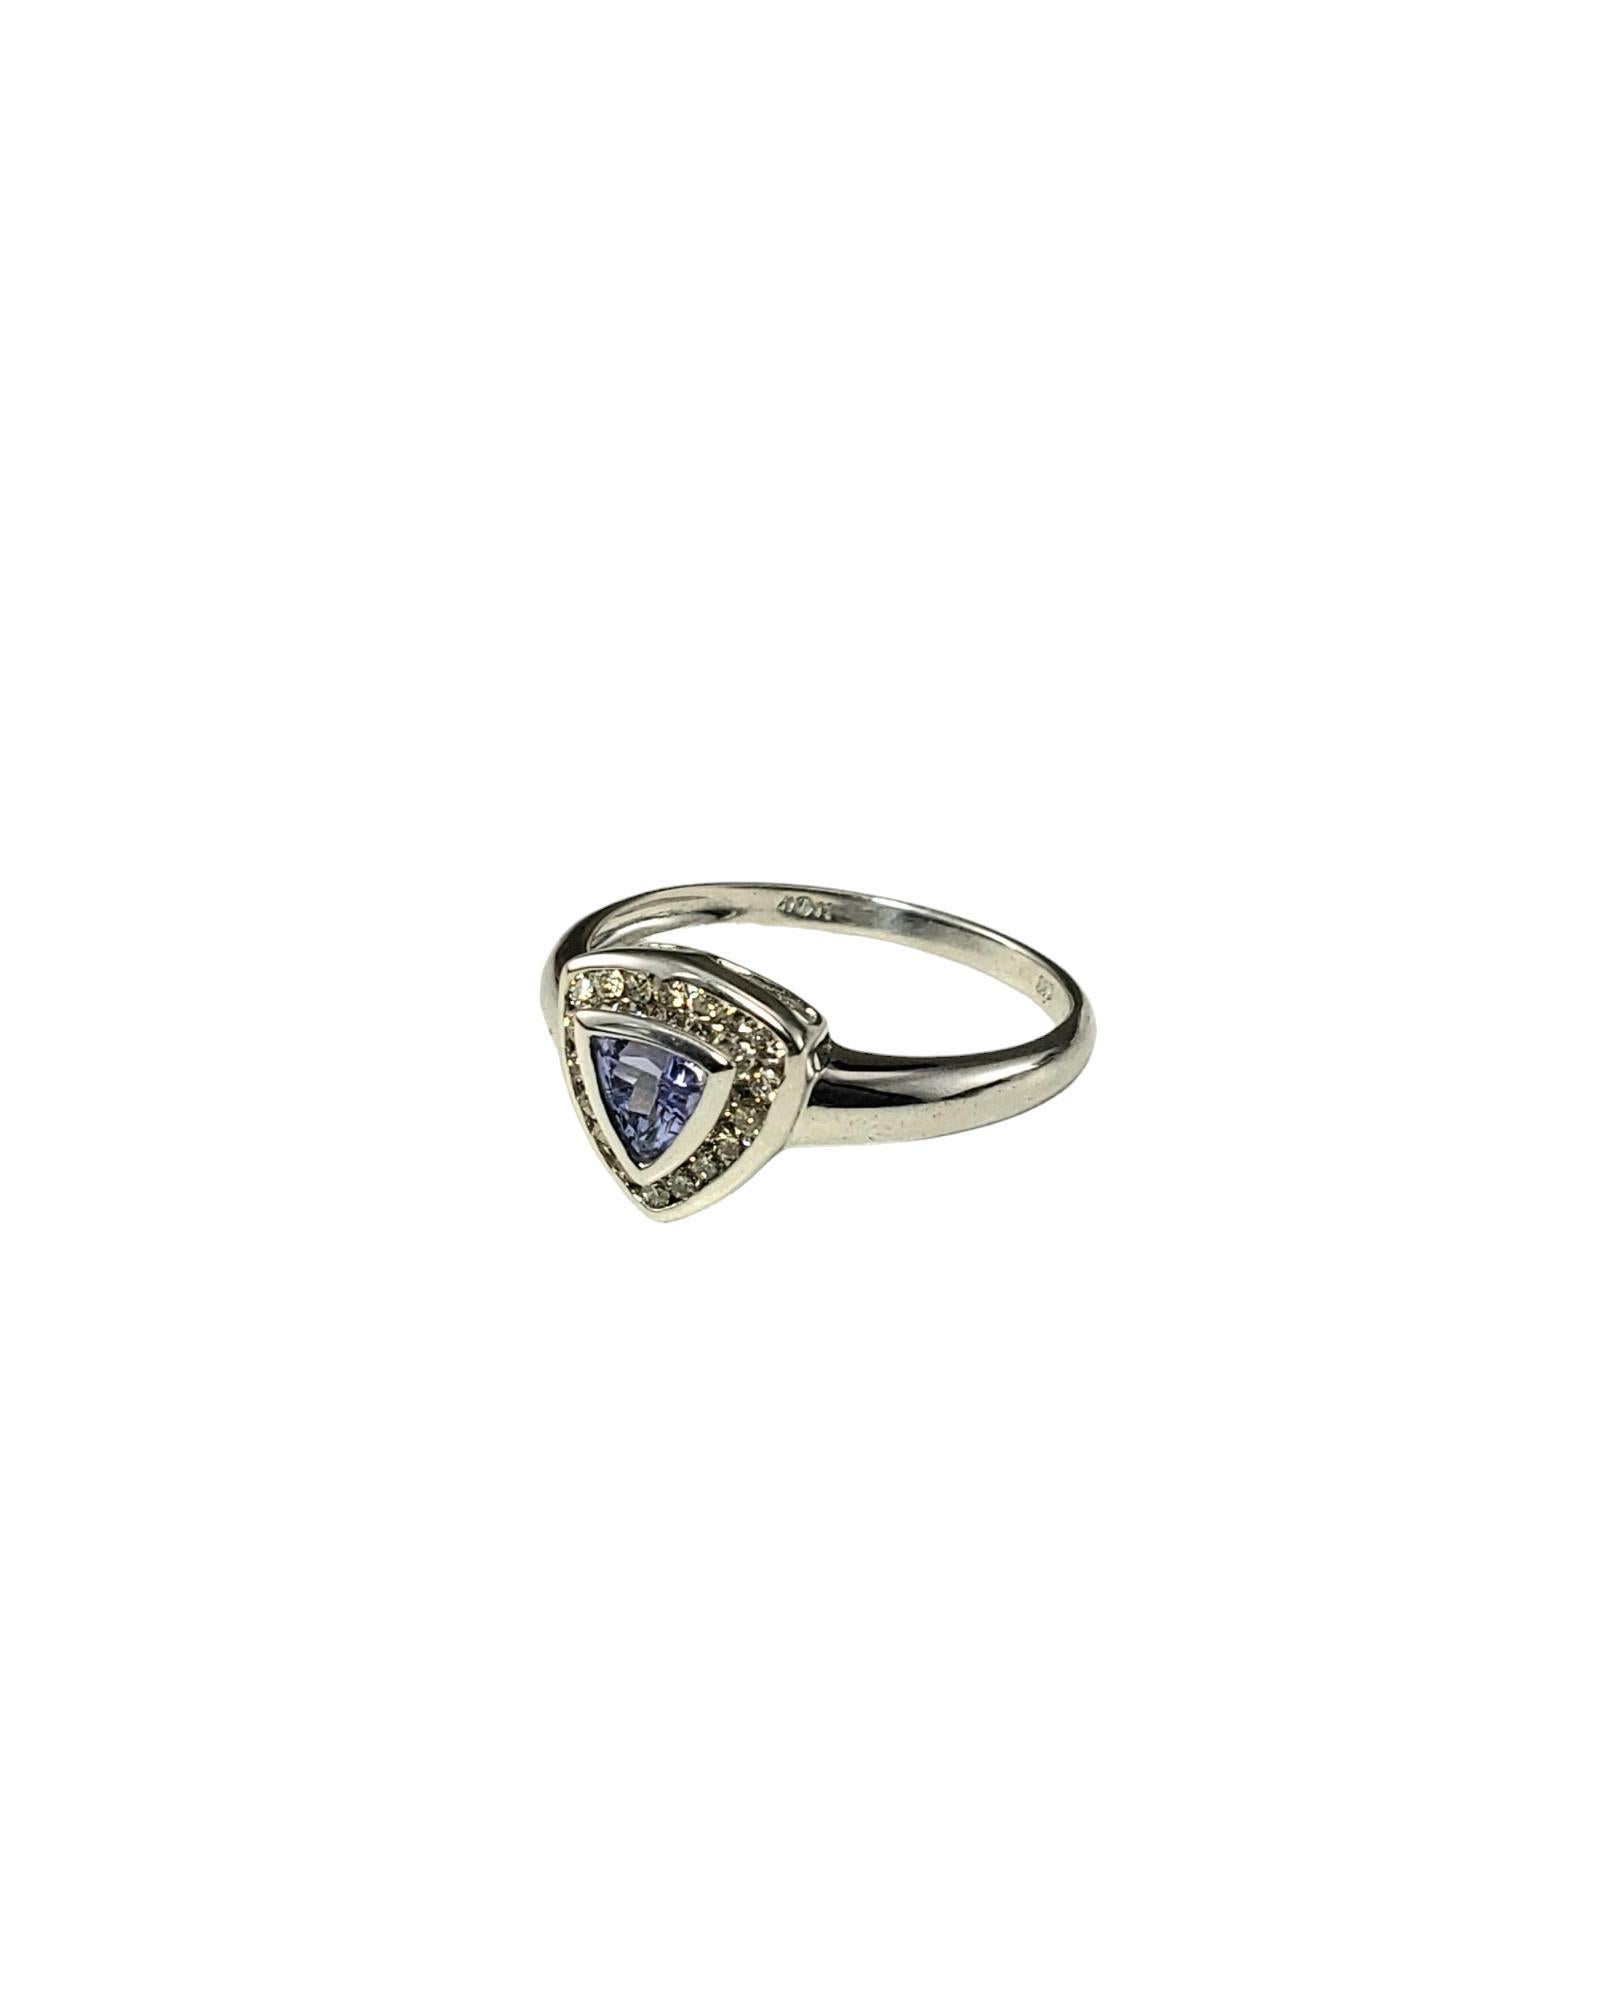 Brilliant Cut 10K White Gold Tanzanite & Diamond Ring Size 6.75  #17291 For Sale